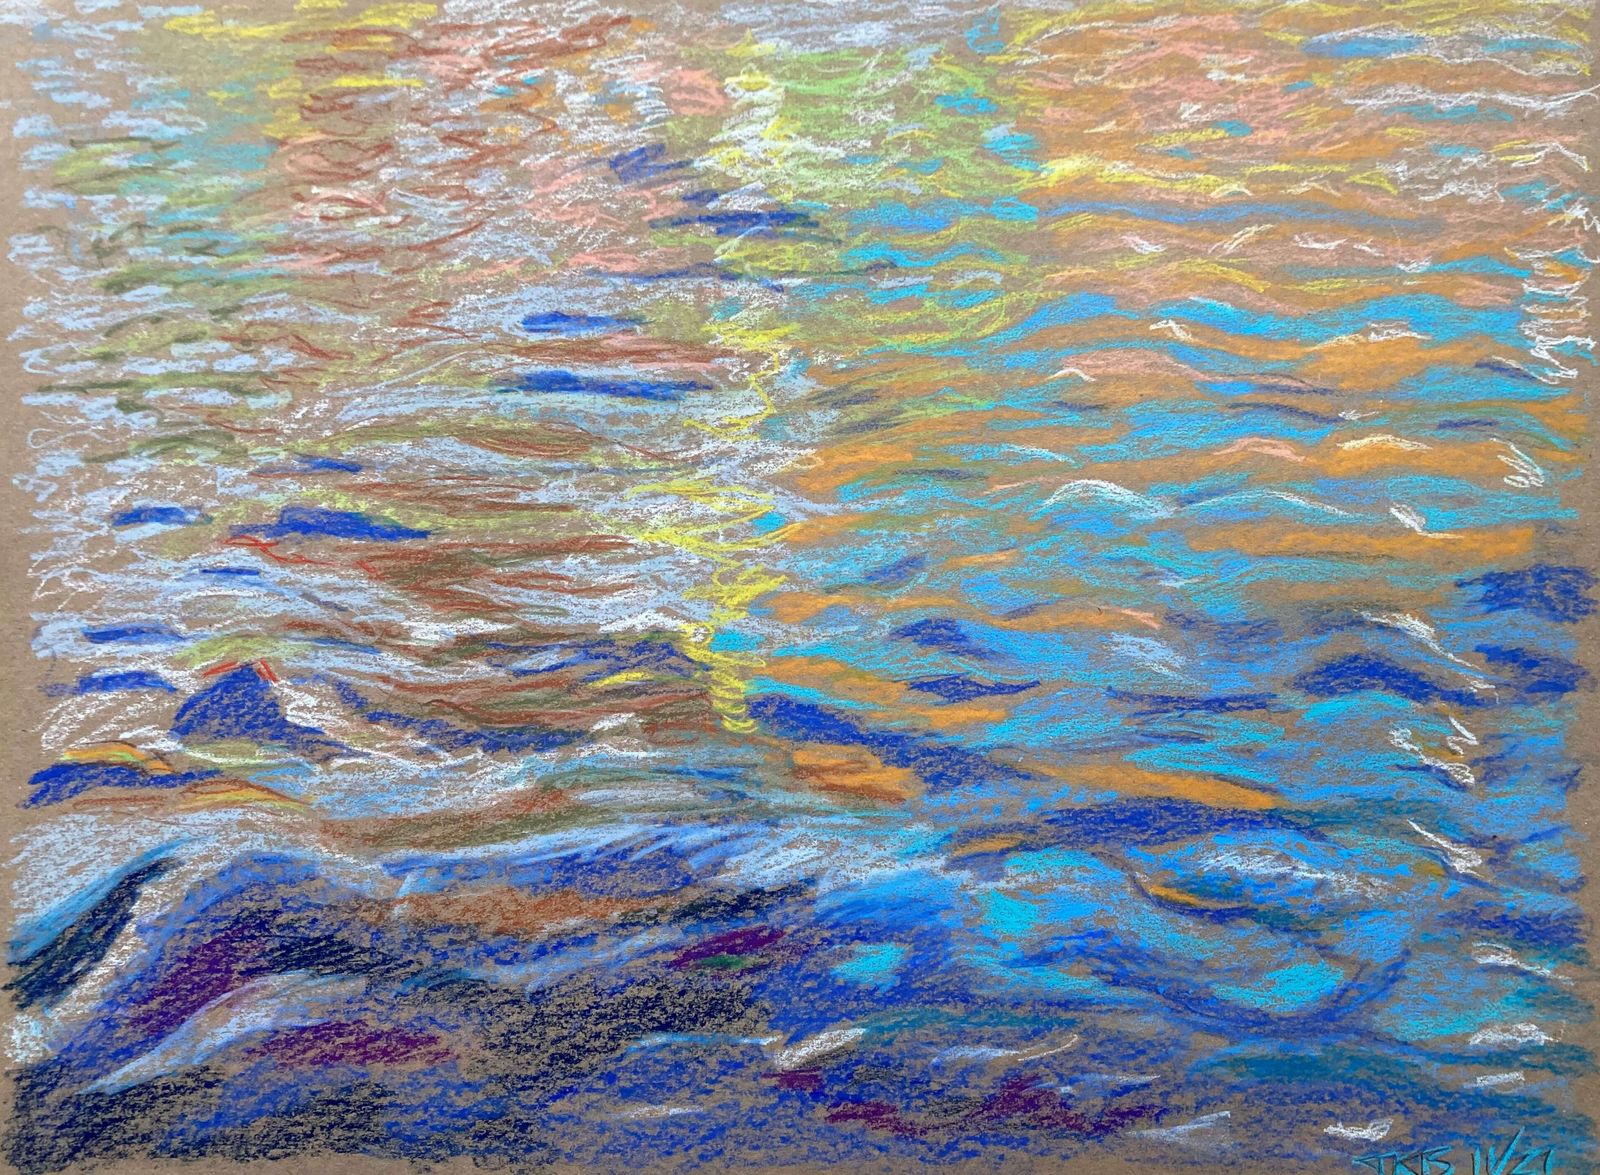 TKB, Sonnenstrahlen am Wasser, 2021, 48 X 35 cm, Pastellkreide auf Papier